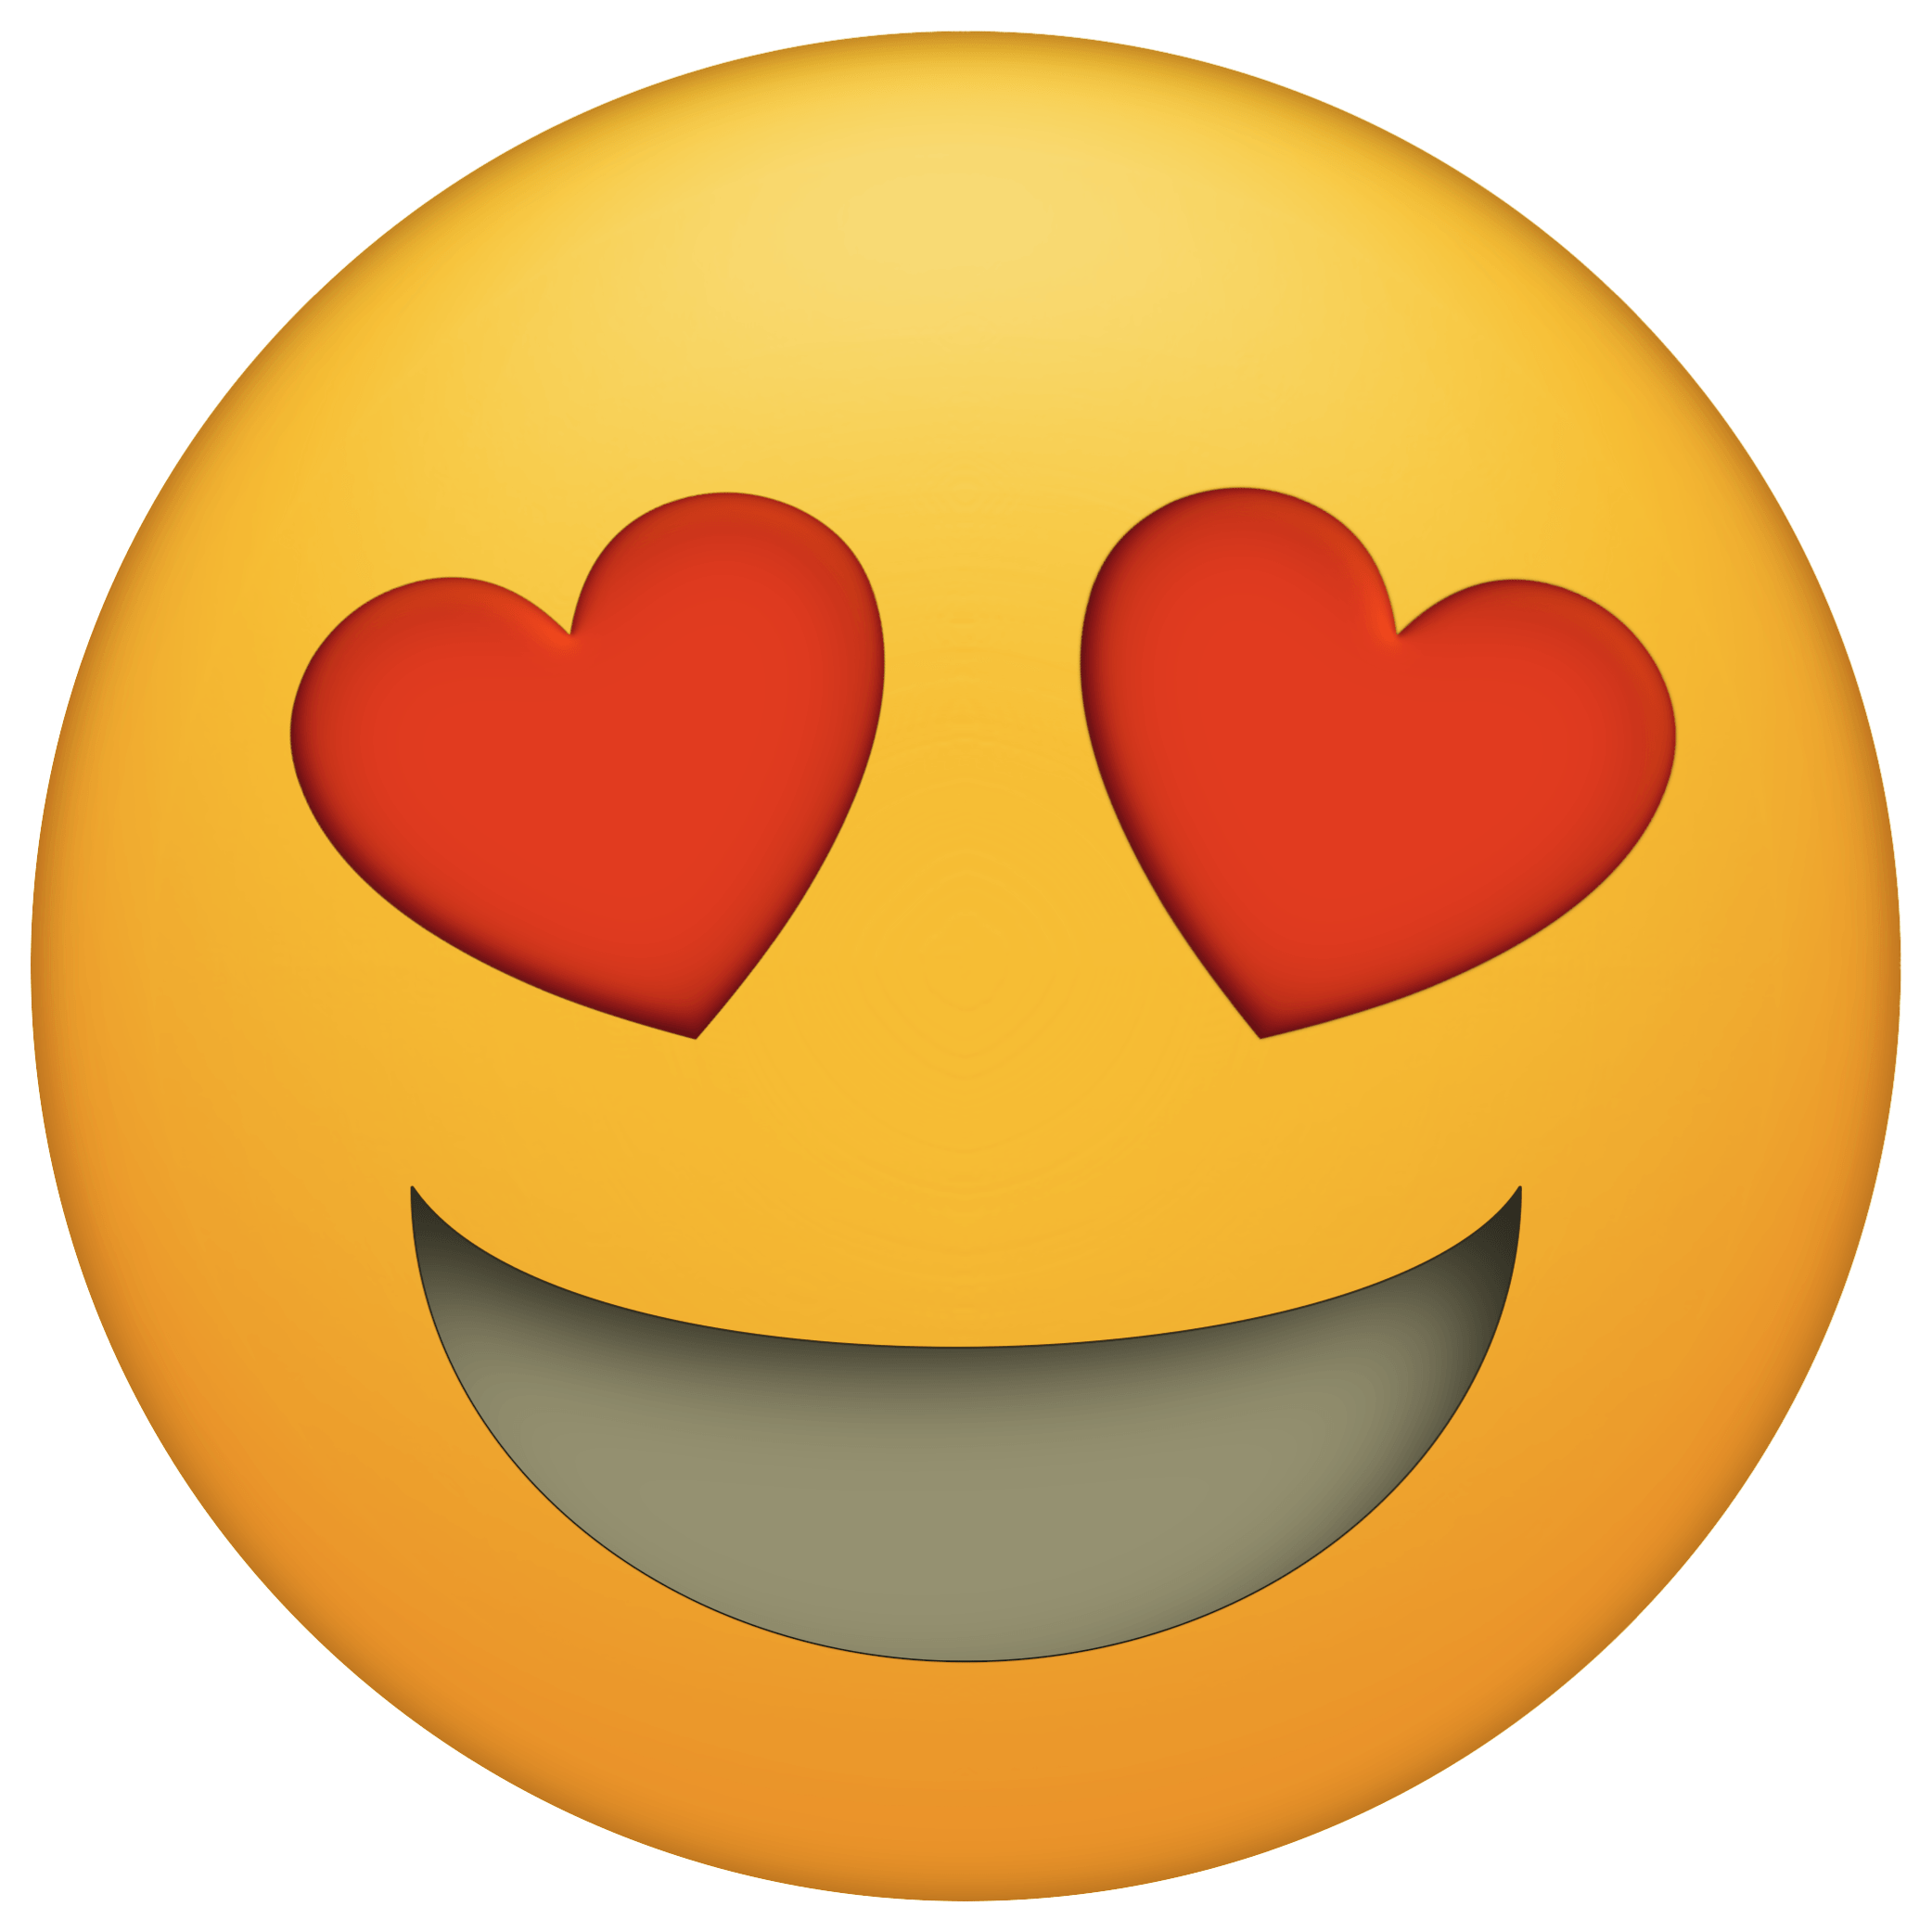 Twitter Emoji Heart PNG Immagine di alta qualità